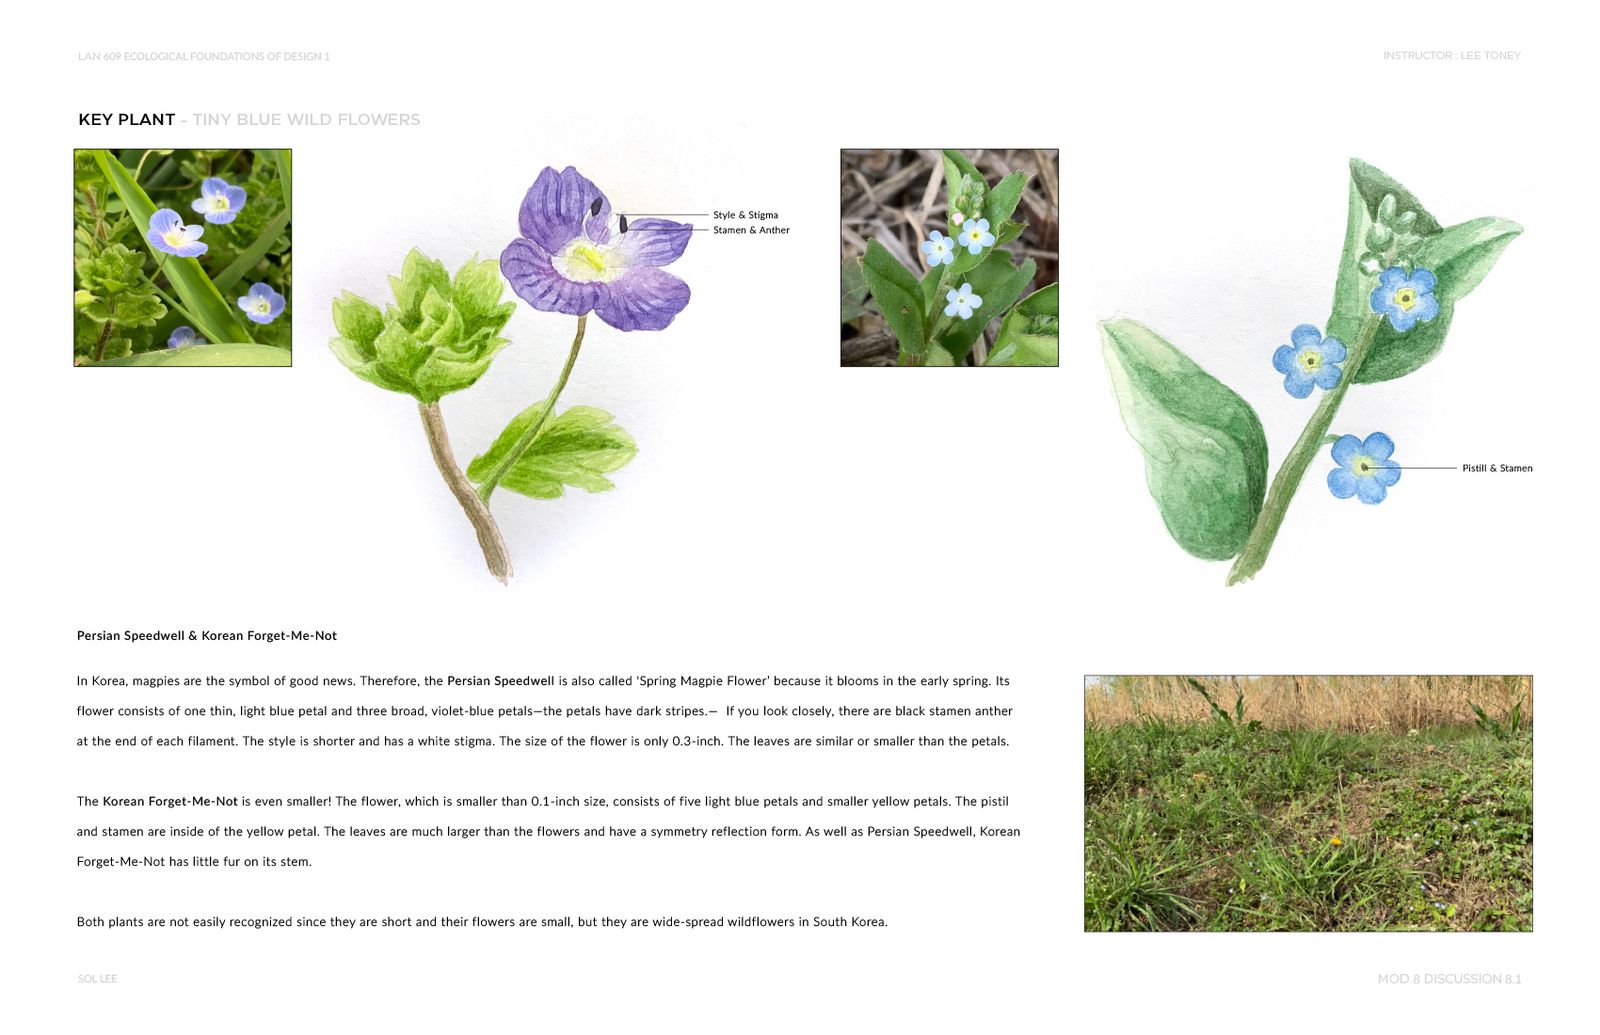 Gangseo Wet Ecology Park - Key Plant - Tiny Blue Wild Flower